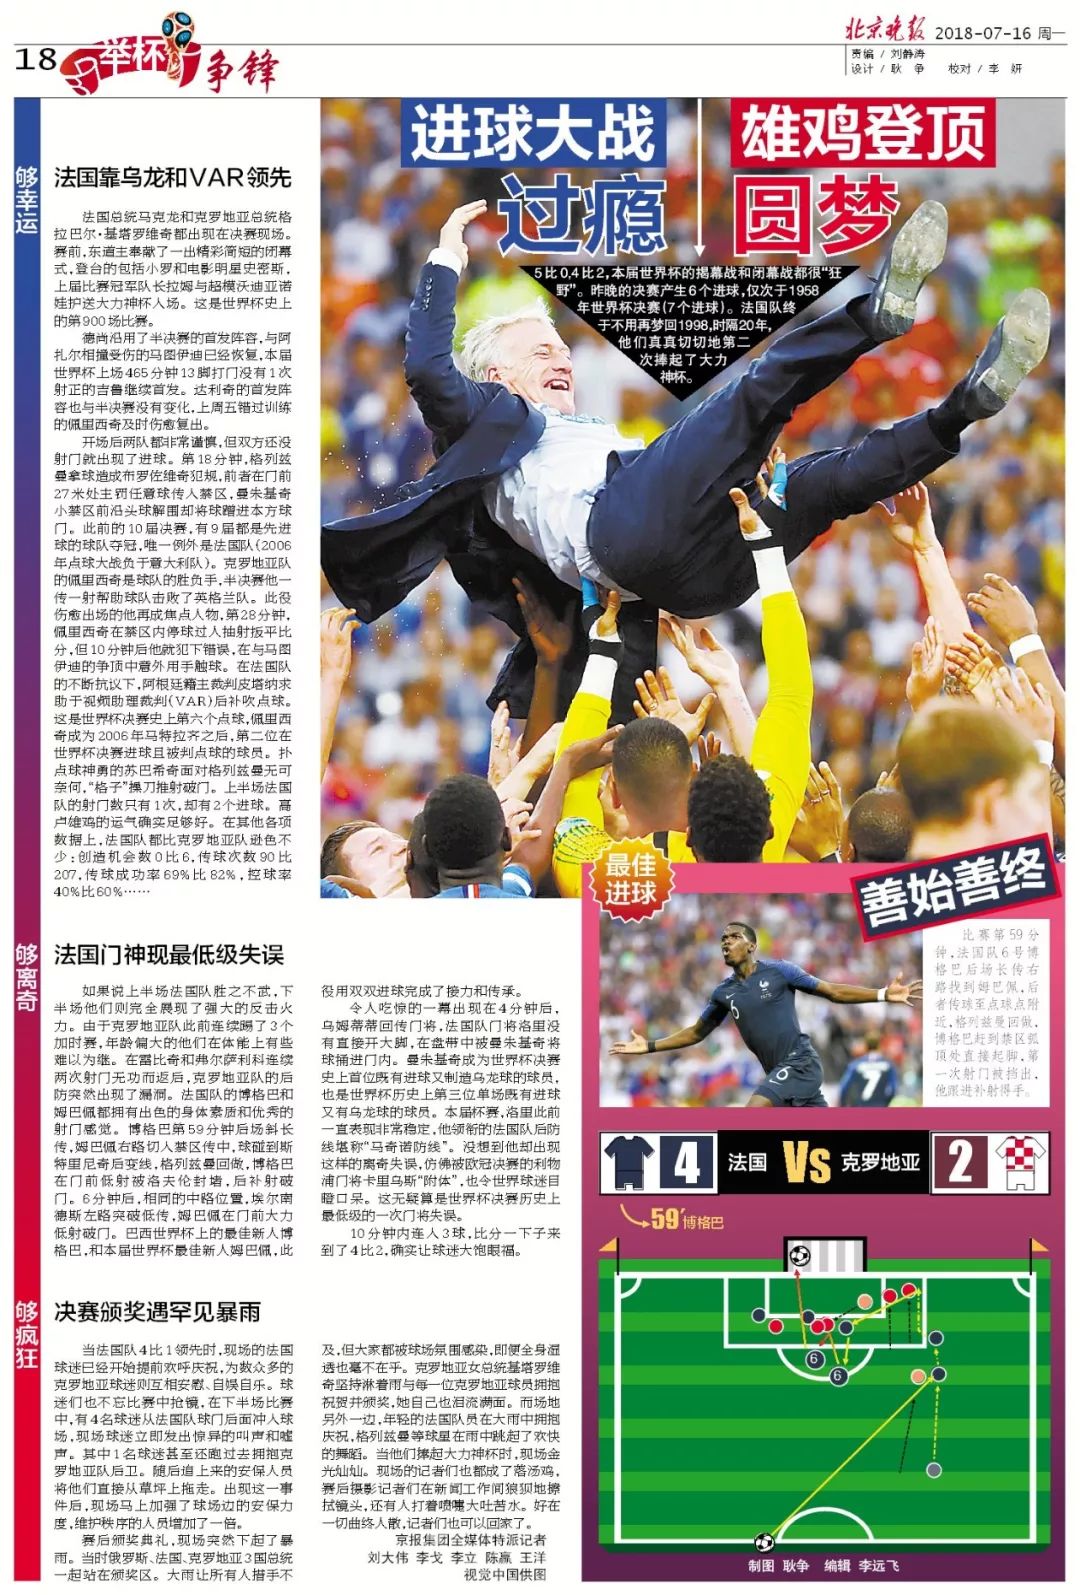 “举杯”北京晚报7月16日世界杯版面欣赏